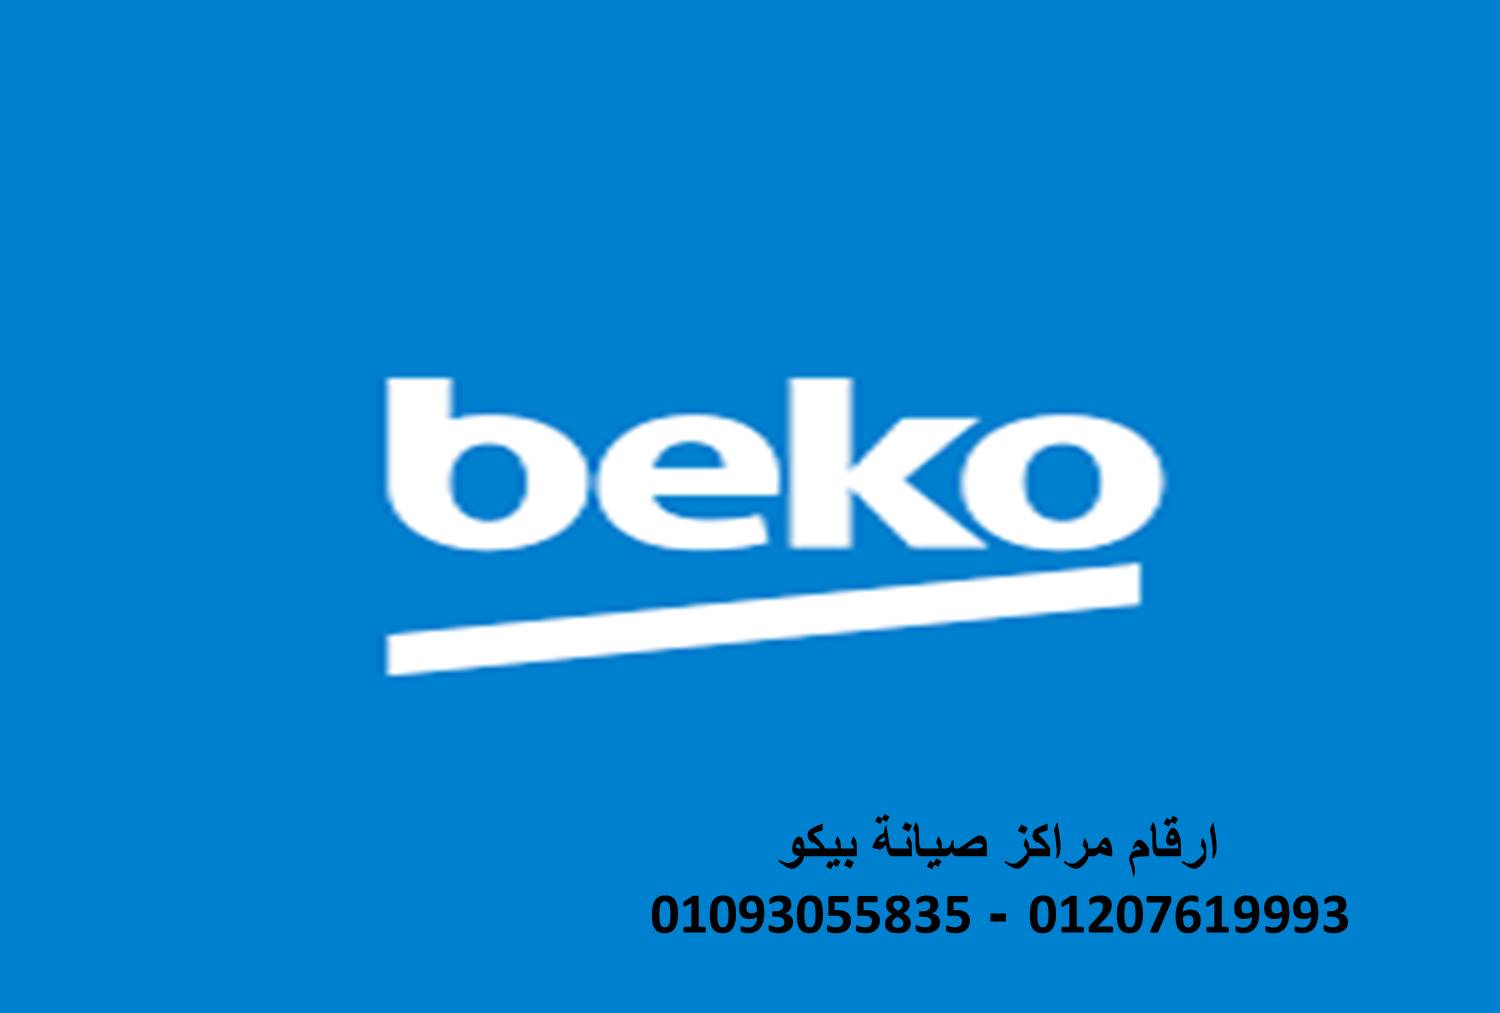 مراكز صيانة ثلاجات بيكو فرع اشمون 01060037840 رقم الادارة  0235700994